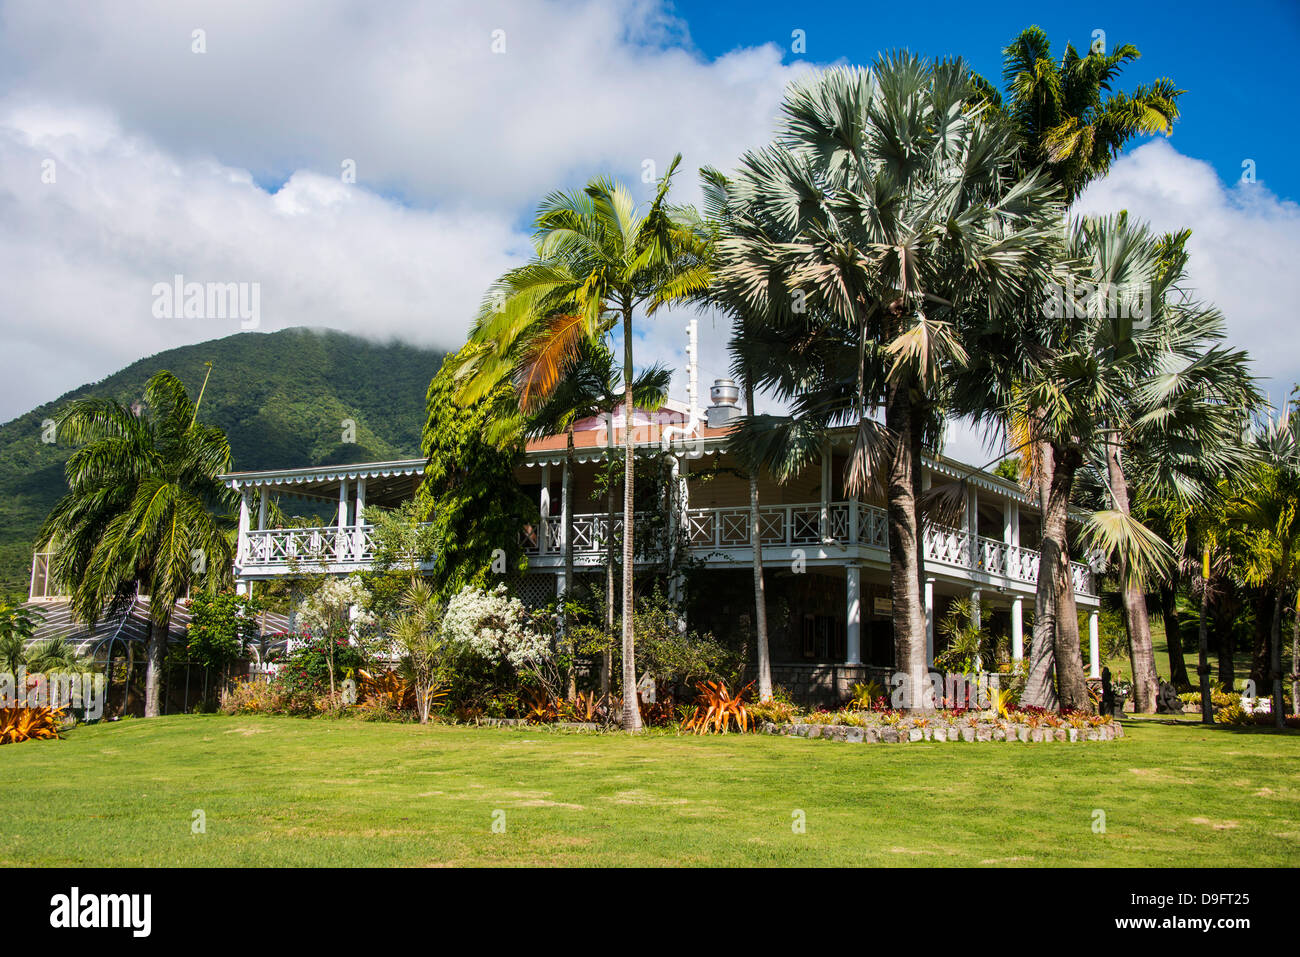 Jardins botaniques sur l'île de Nevis, Saint Kitts et Nevis, Iles sous le vent, Antilles, Caraïbes Banque D'Images